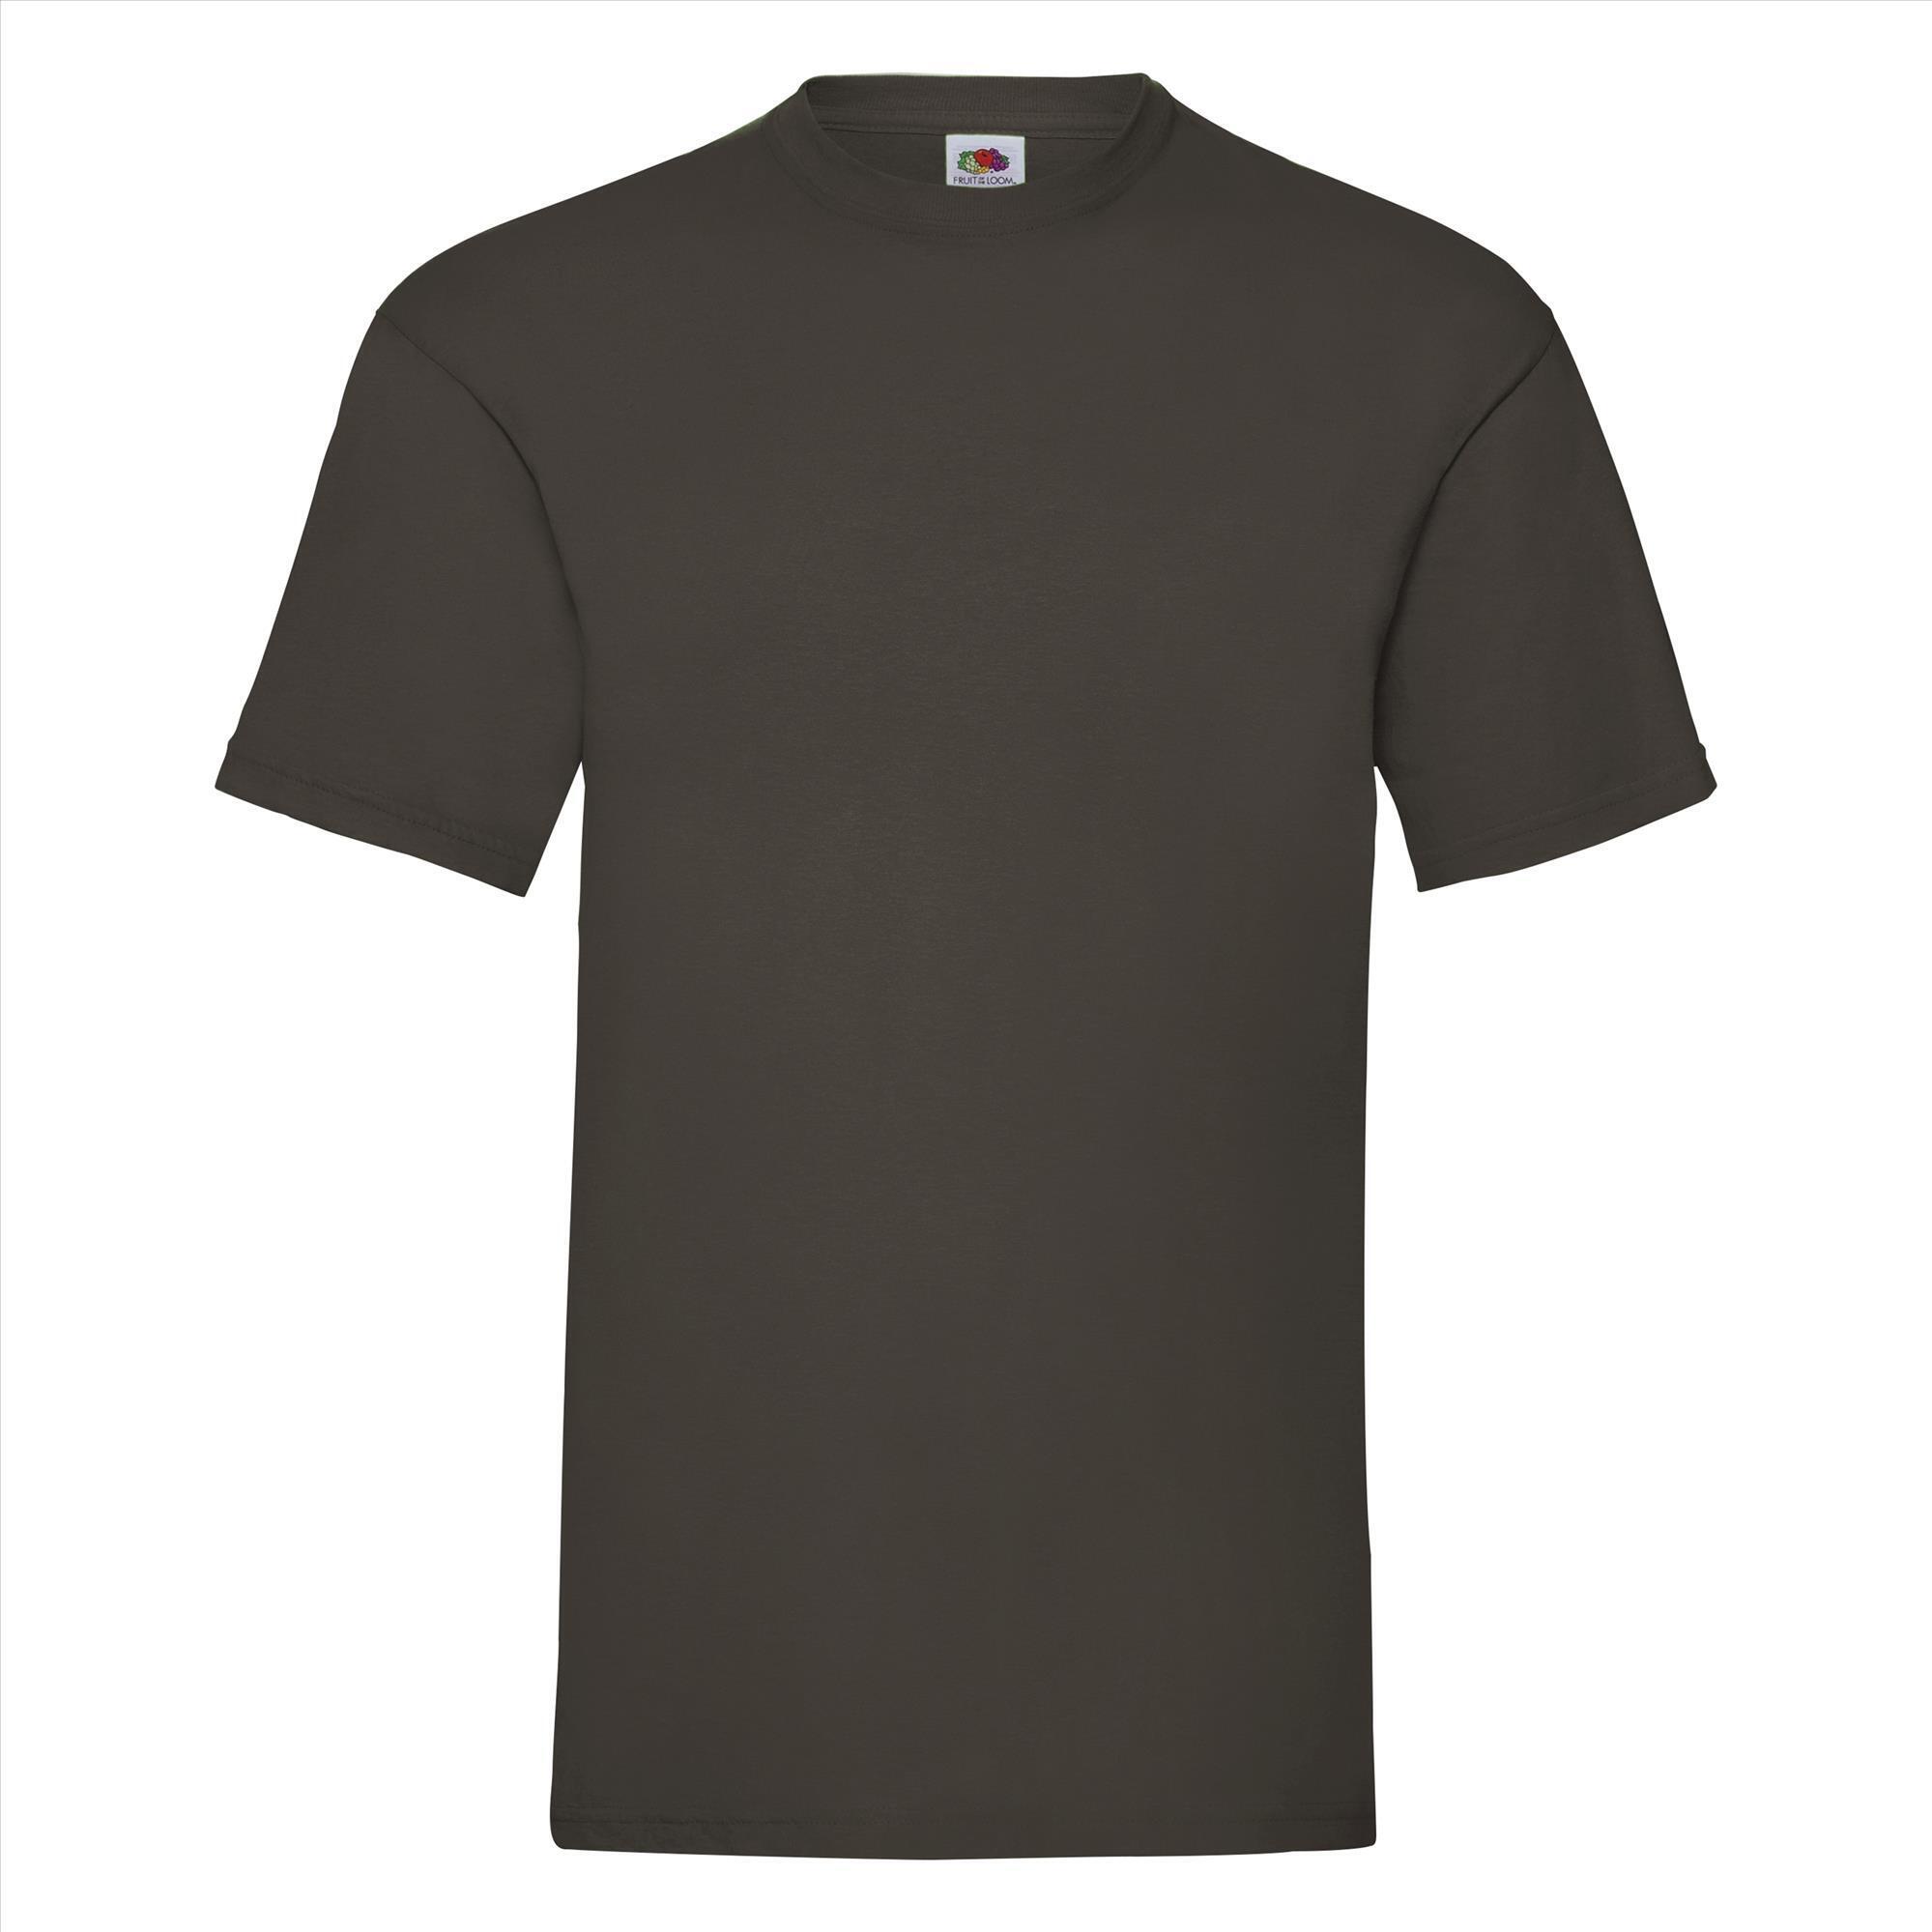 T-shirt voor mannen chocolade kleur personaliseren T-shirt bedrukken